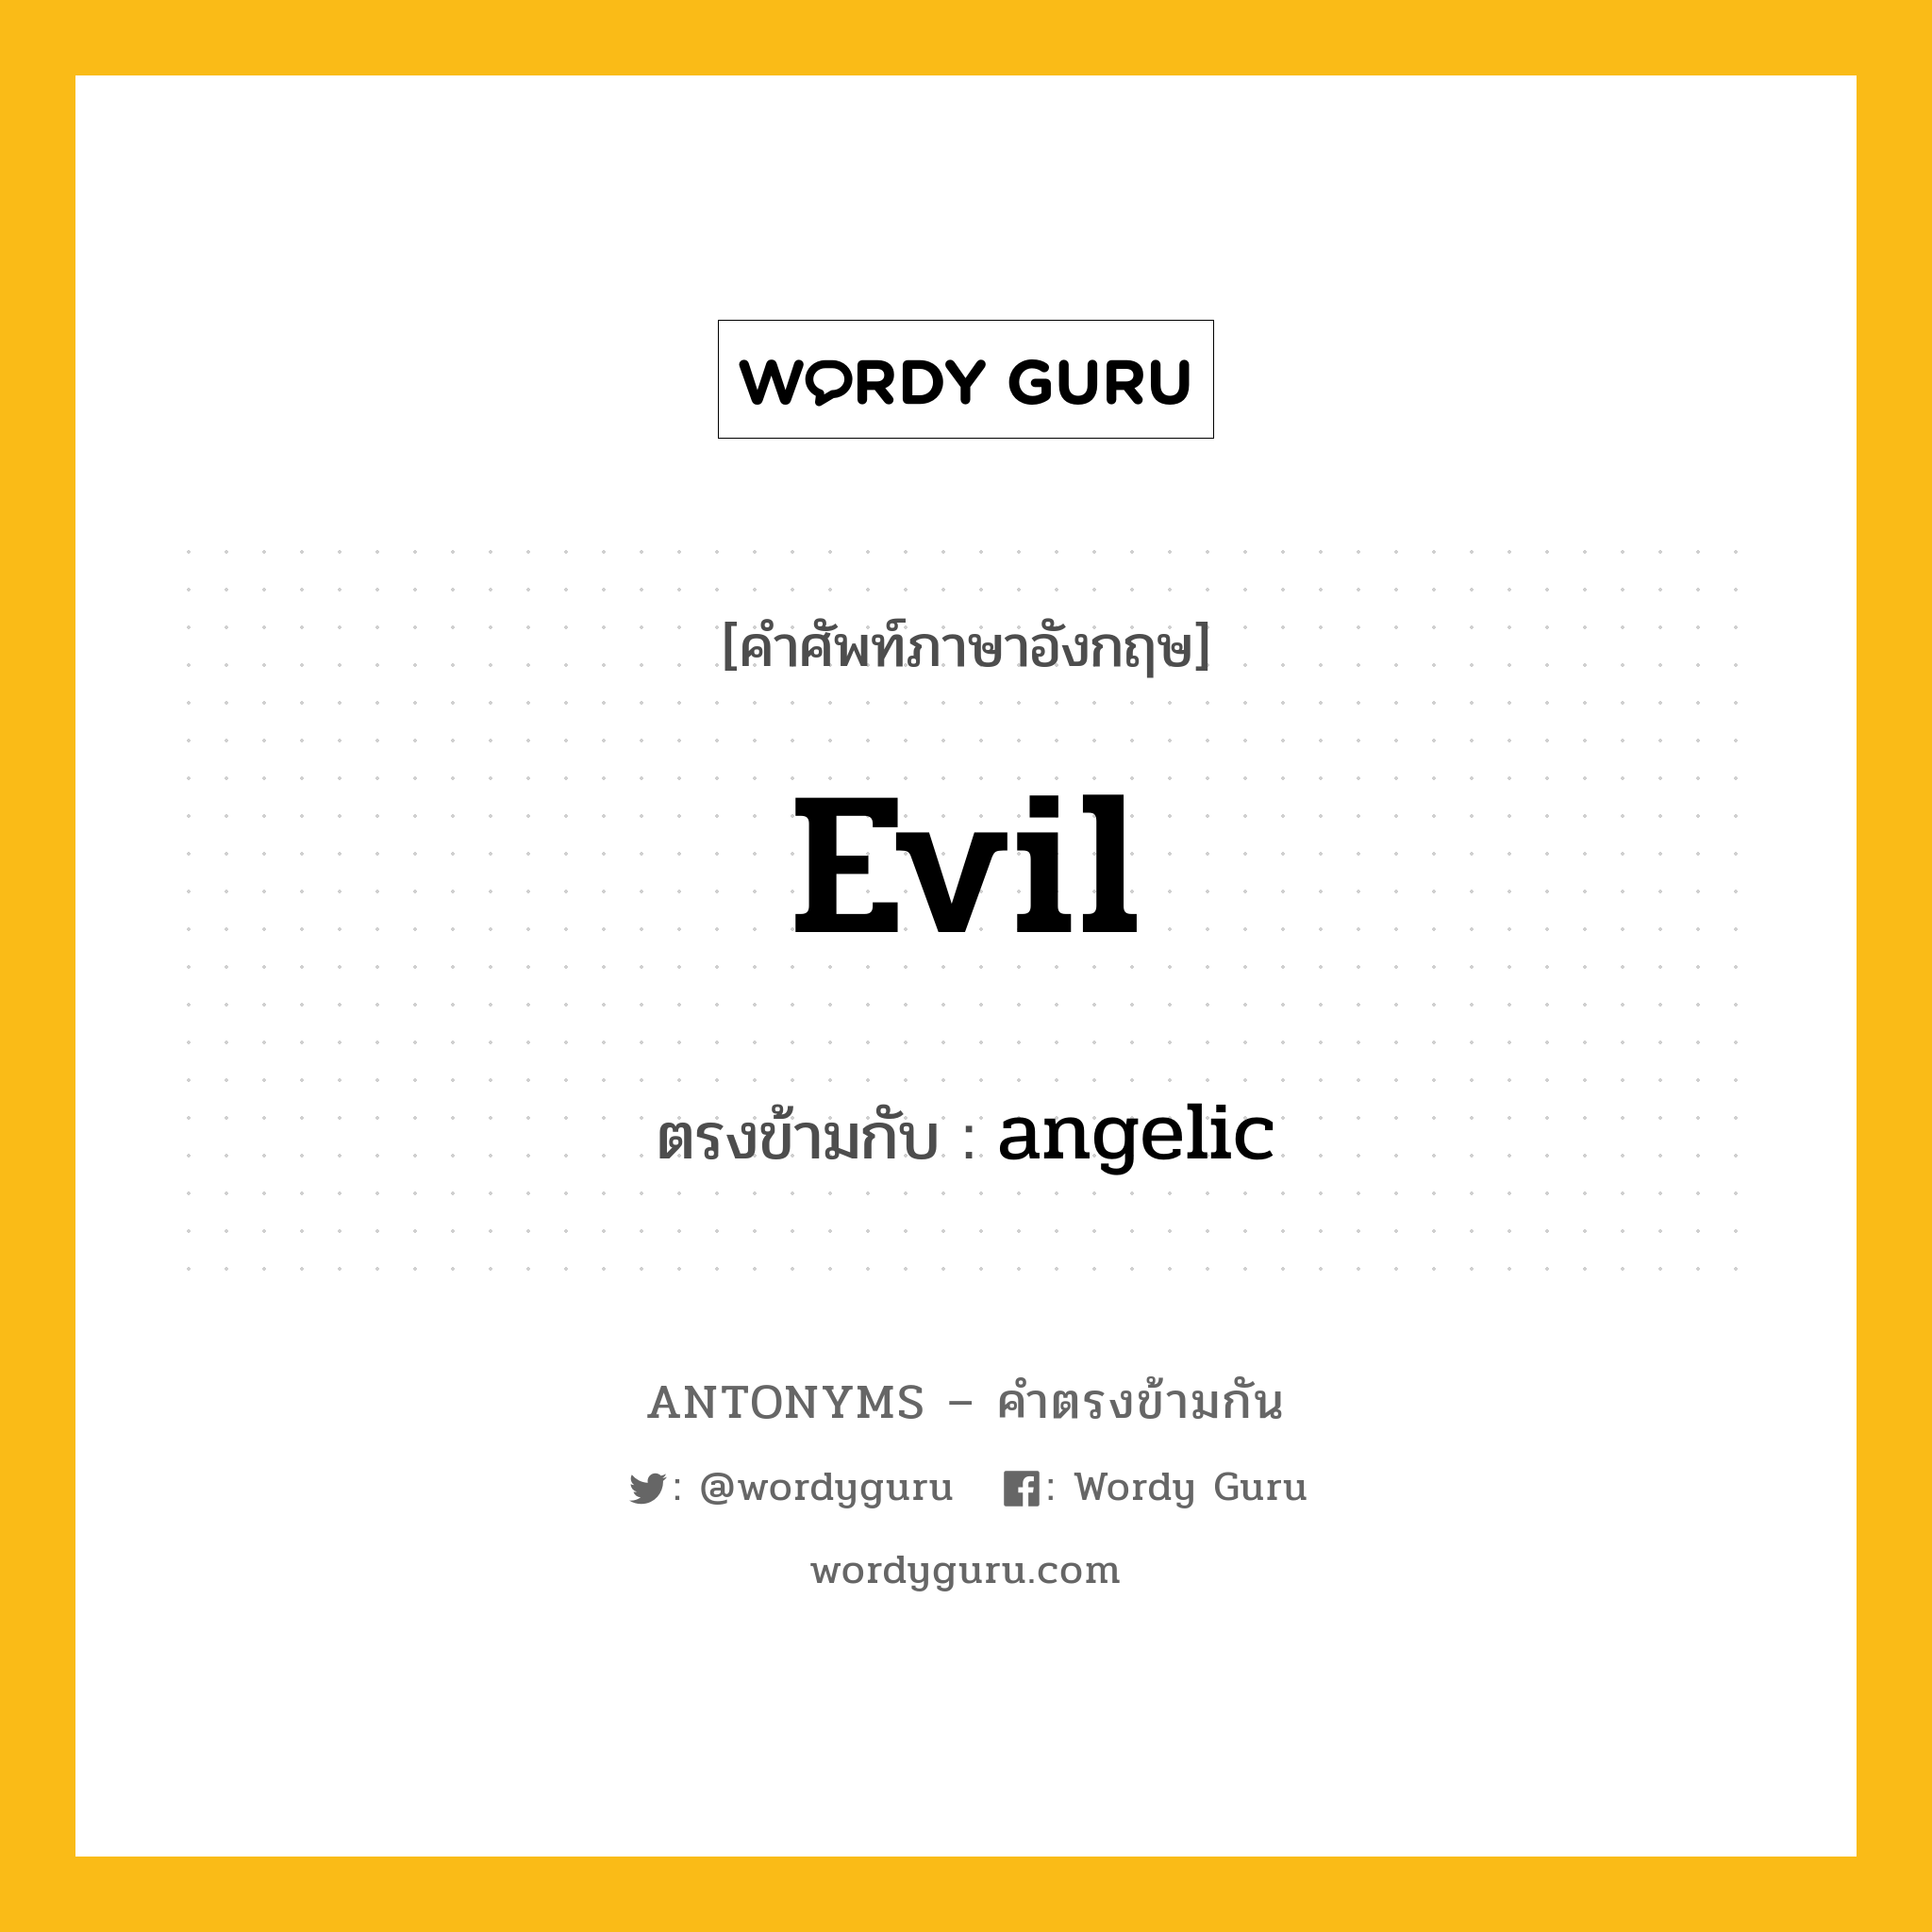 evil เป็นคำตรงข้ามกับคำไหนบ้าง?, คำศัพท์ภาษาอังกฤษ evil ตรงข้ามกับ angelic หมวด angelic